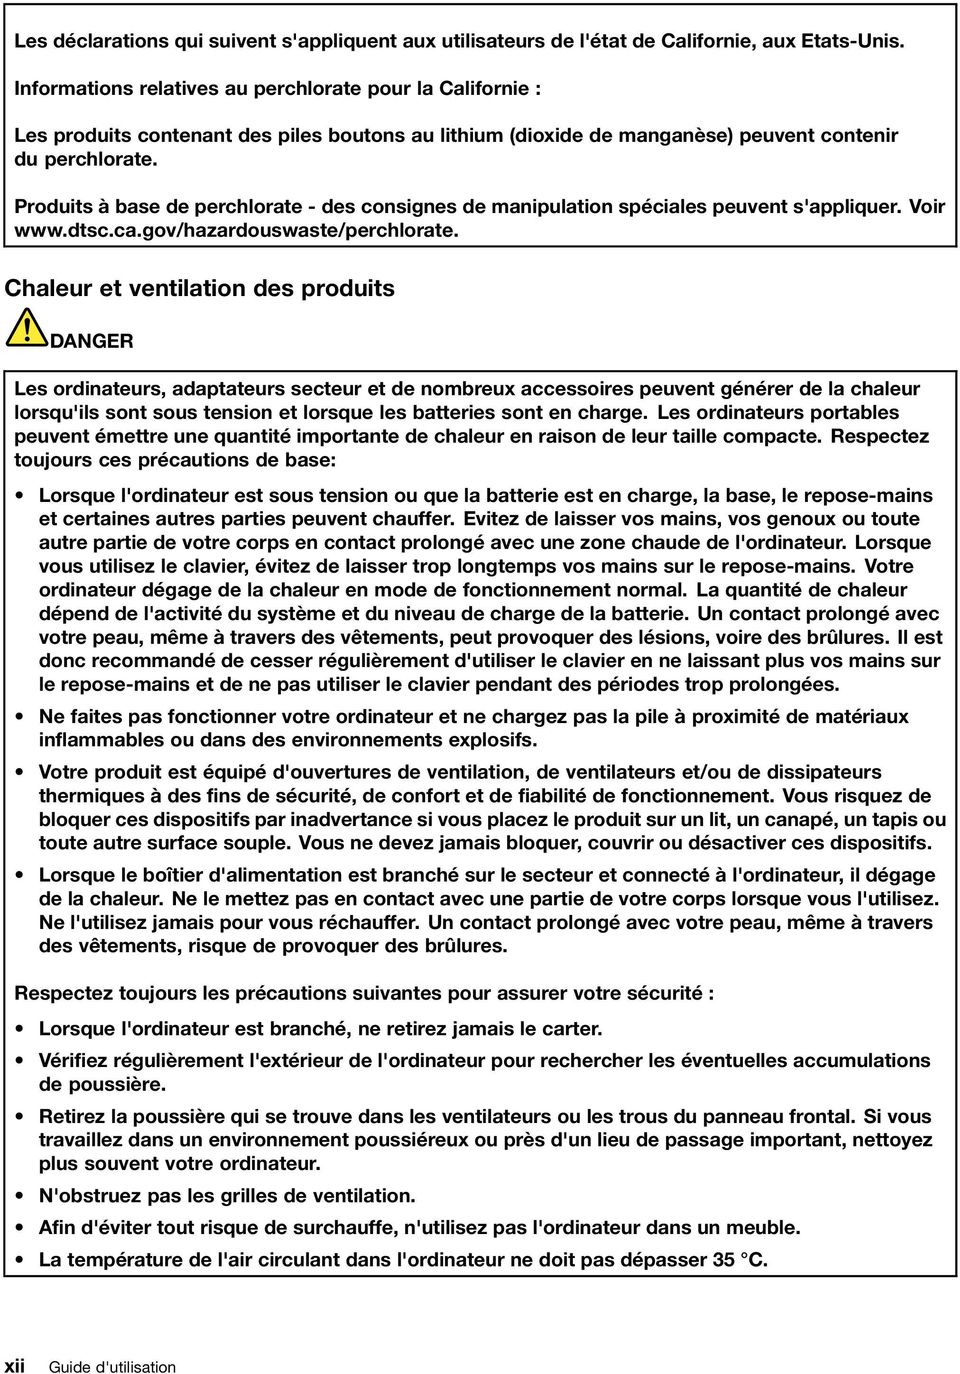 Produits à base de perchlorate - des consignes de manipulation spéciales peuvent s'appliquer. Voir www.dtsc.ca.gov/hazardouswaste/perchlorate.